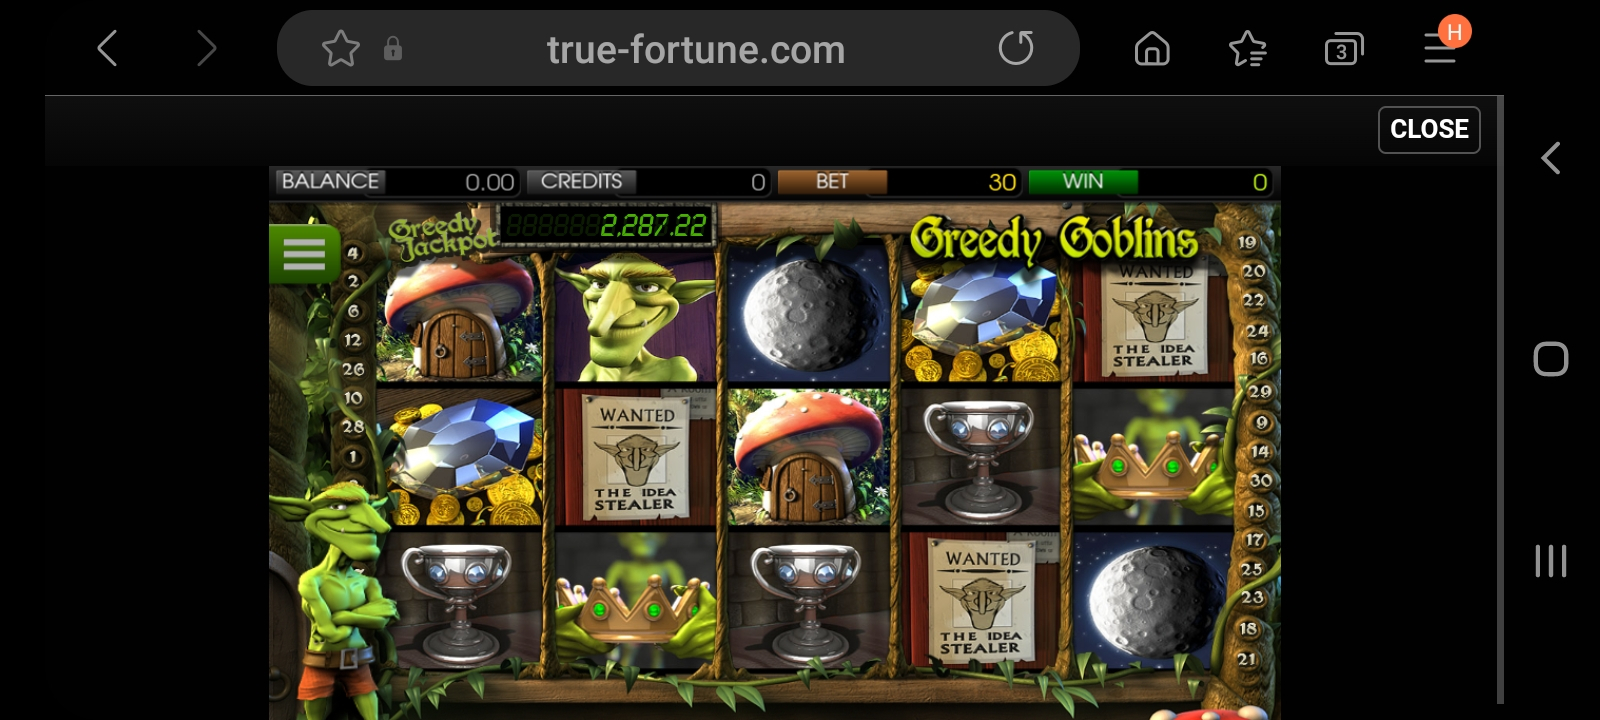 true fortune casino app screenshot 6